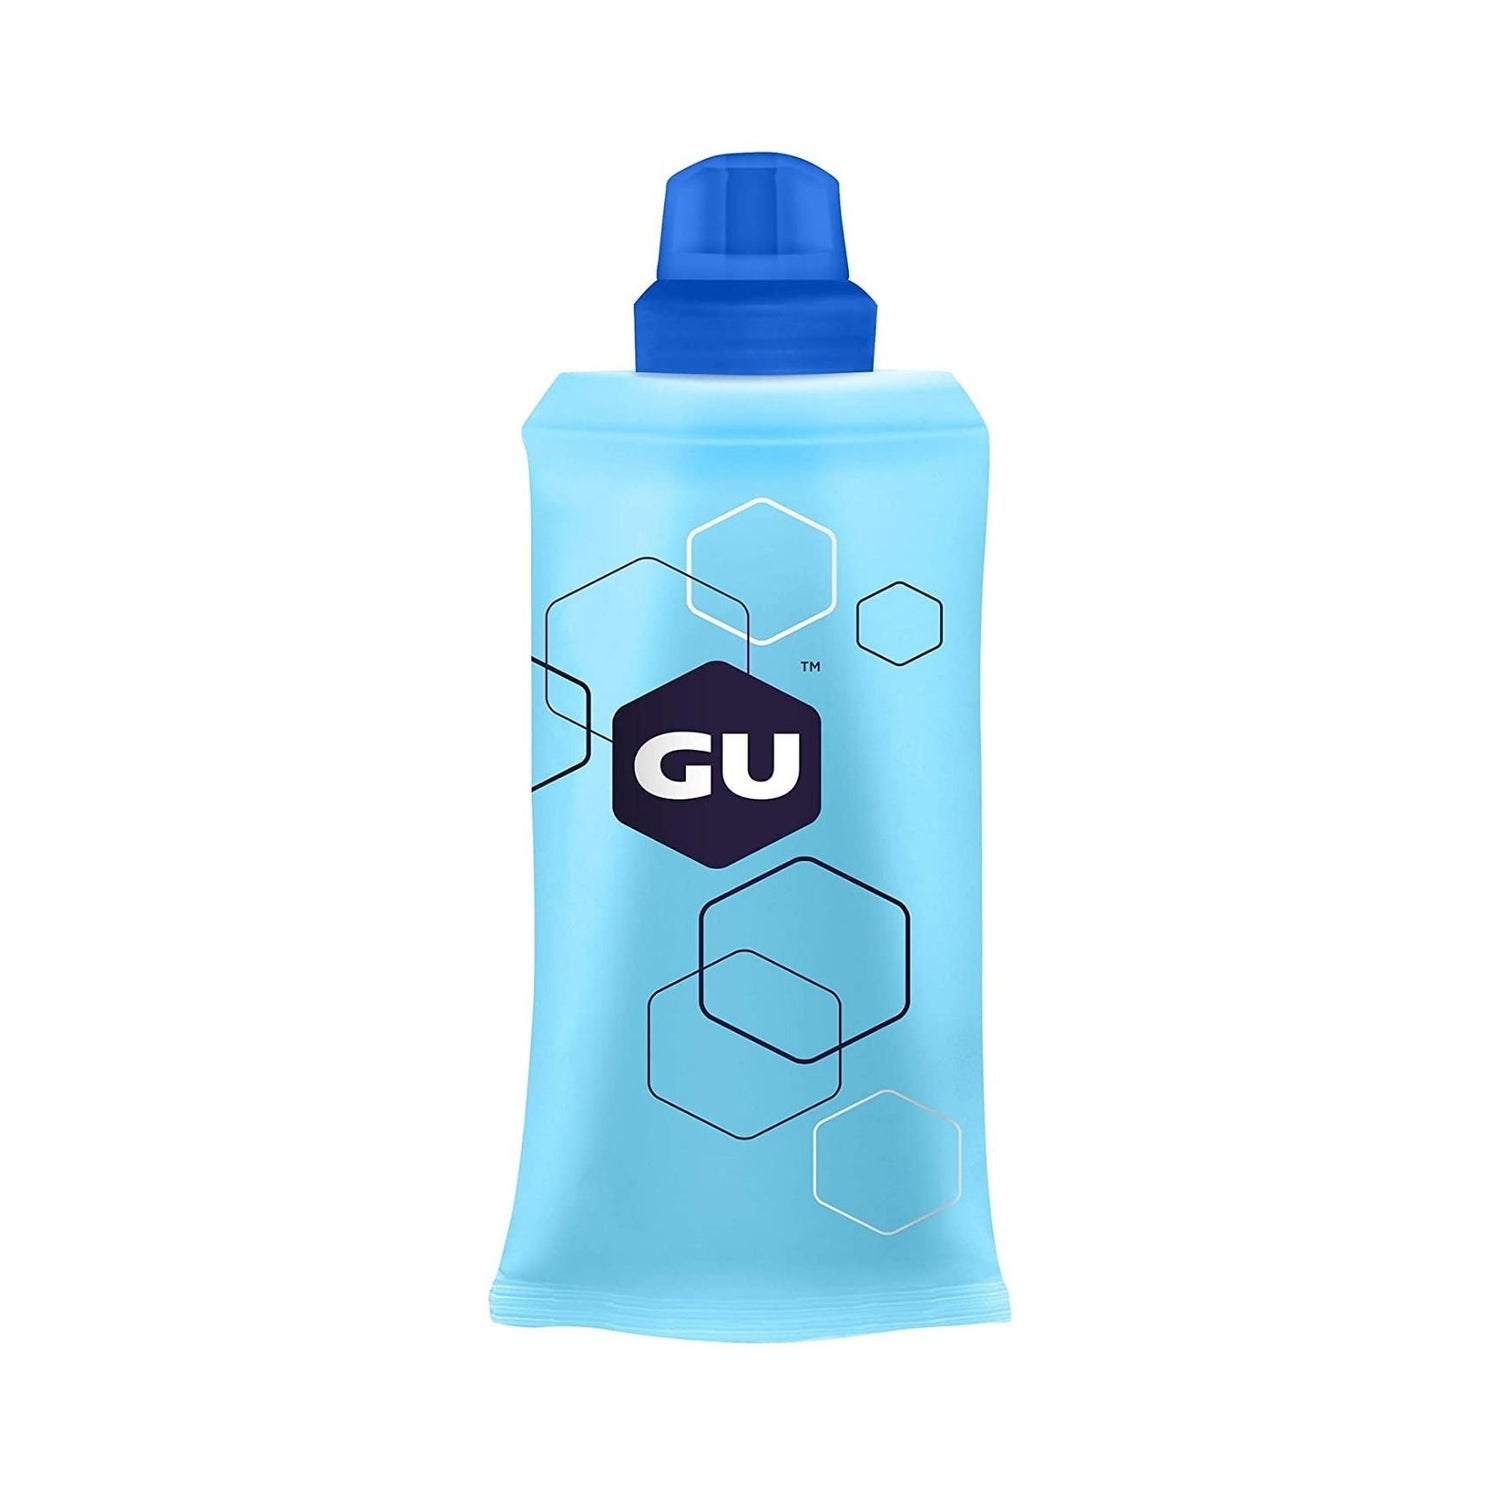 gu energy gel flask review